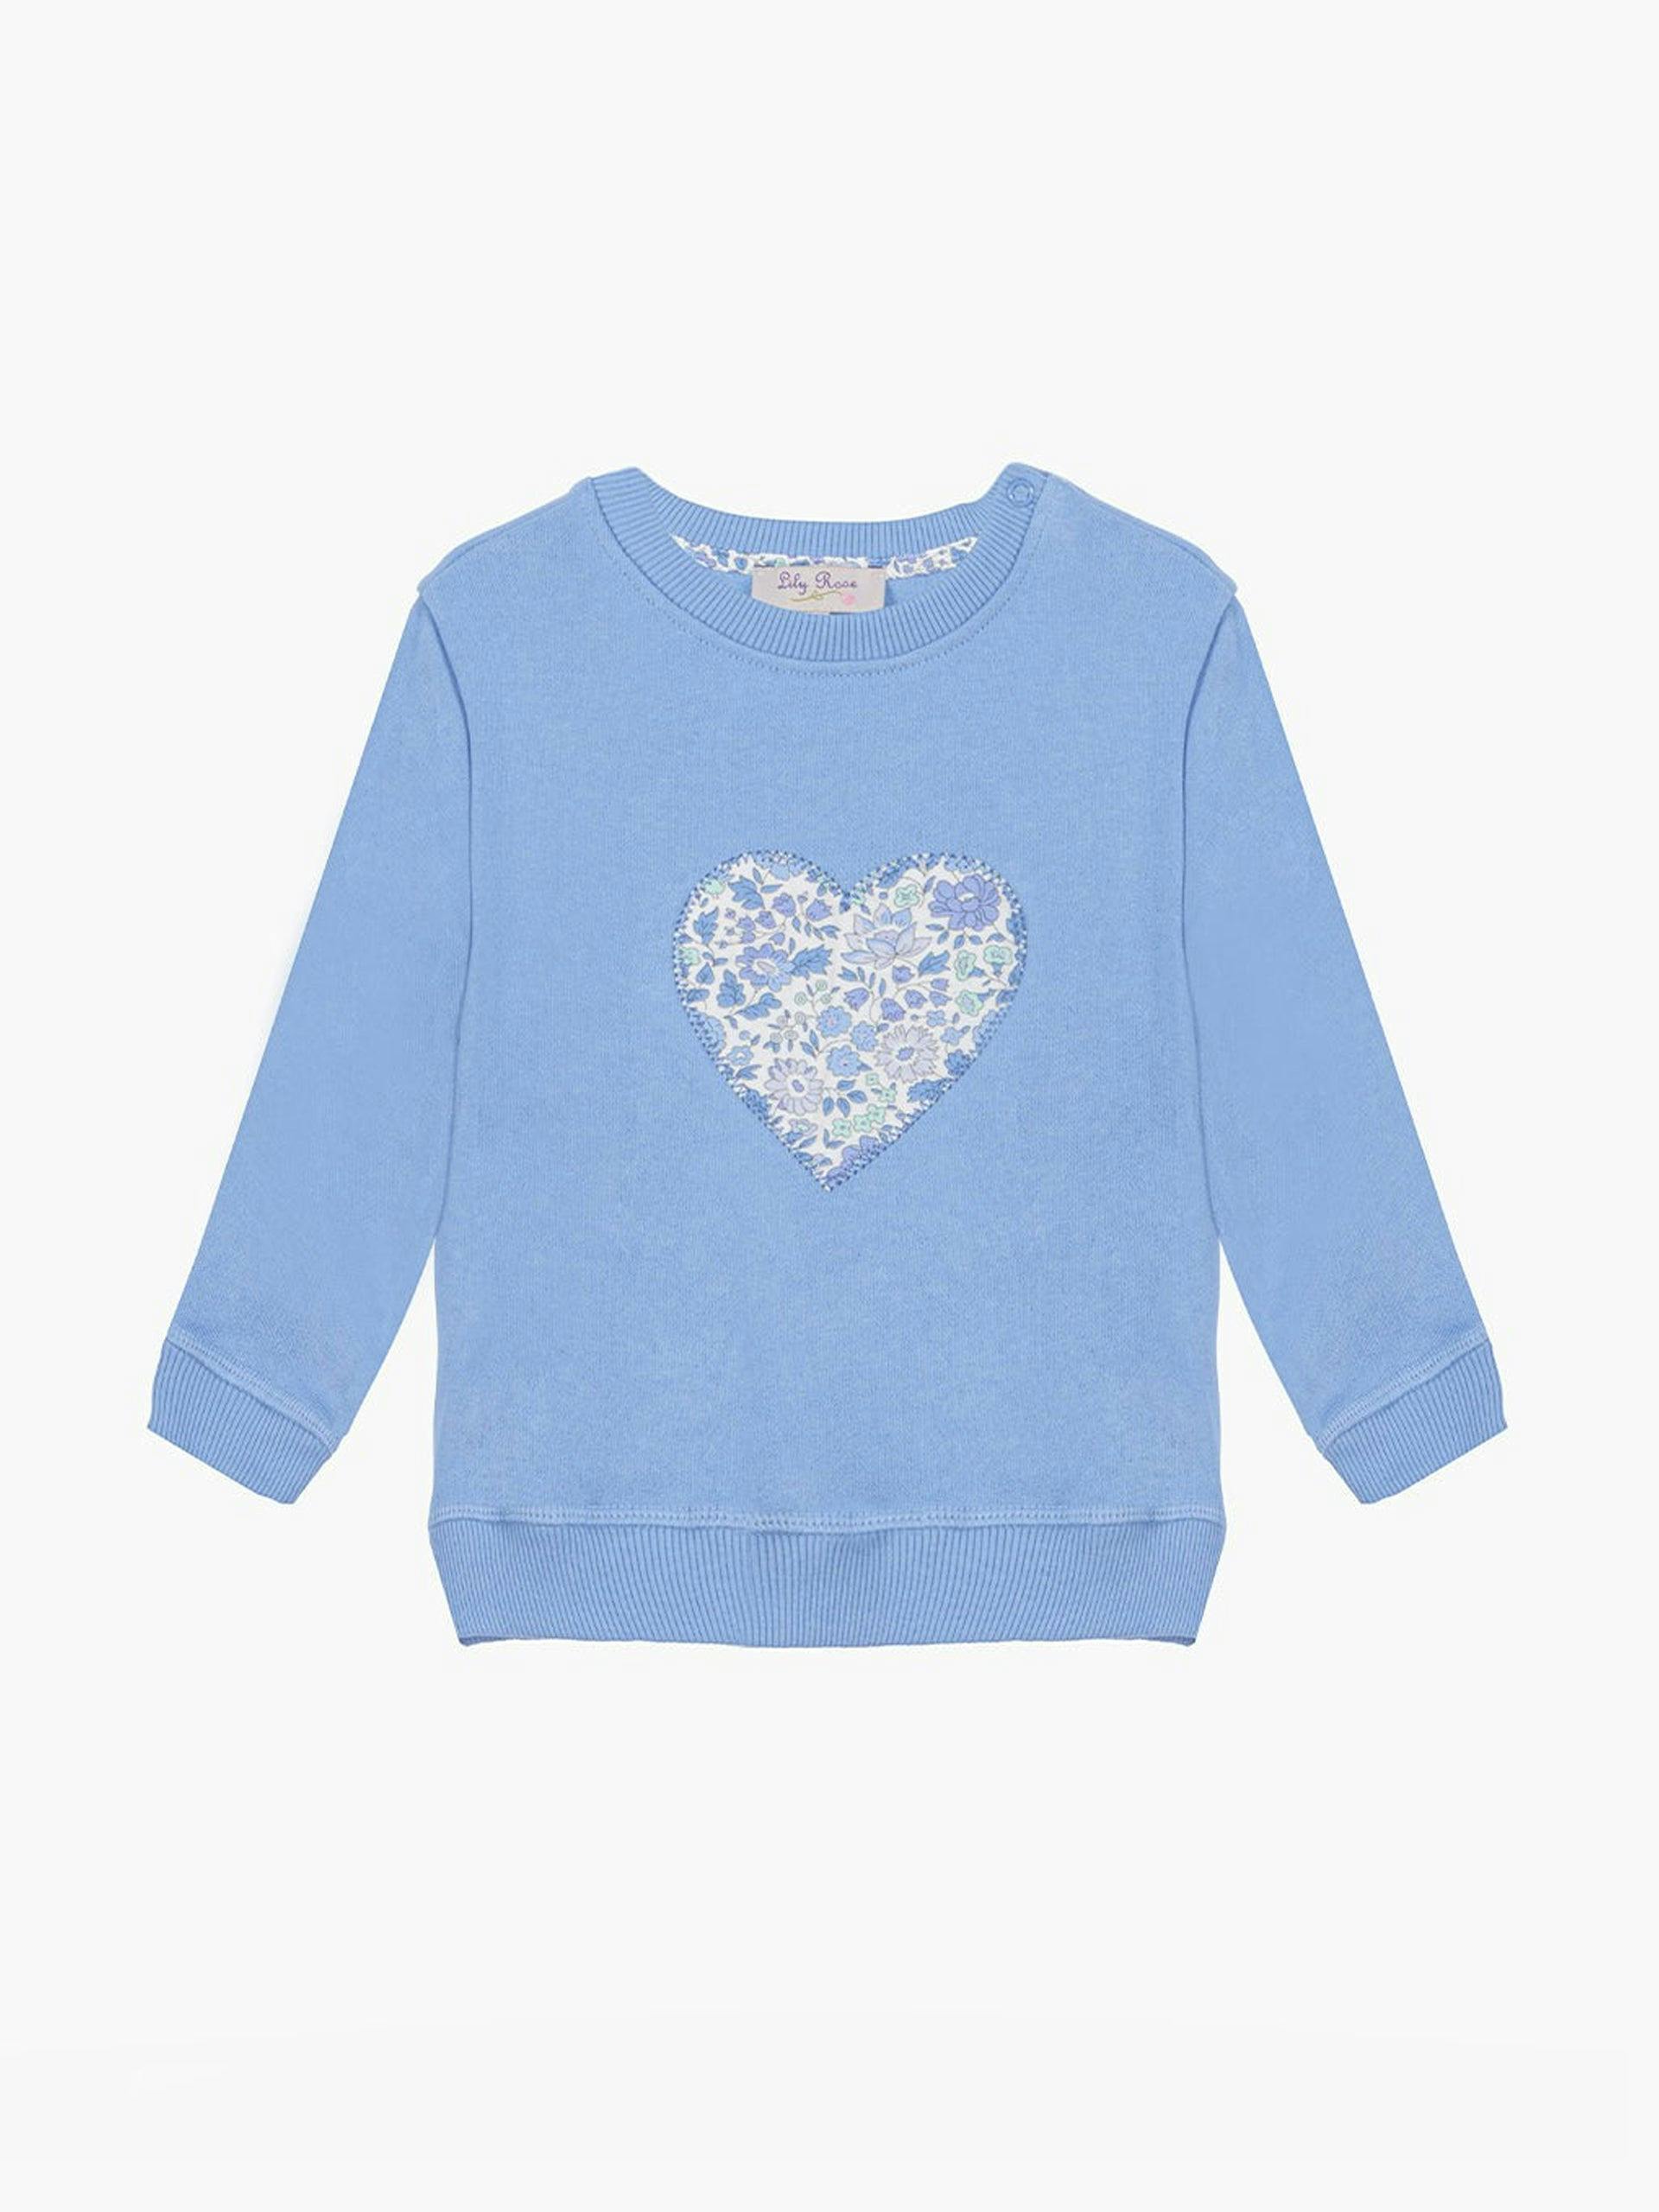 Little girls sweatshirt in blue D'Anjo heart